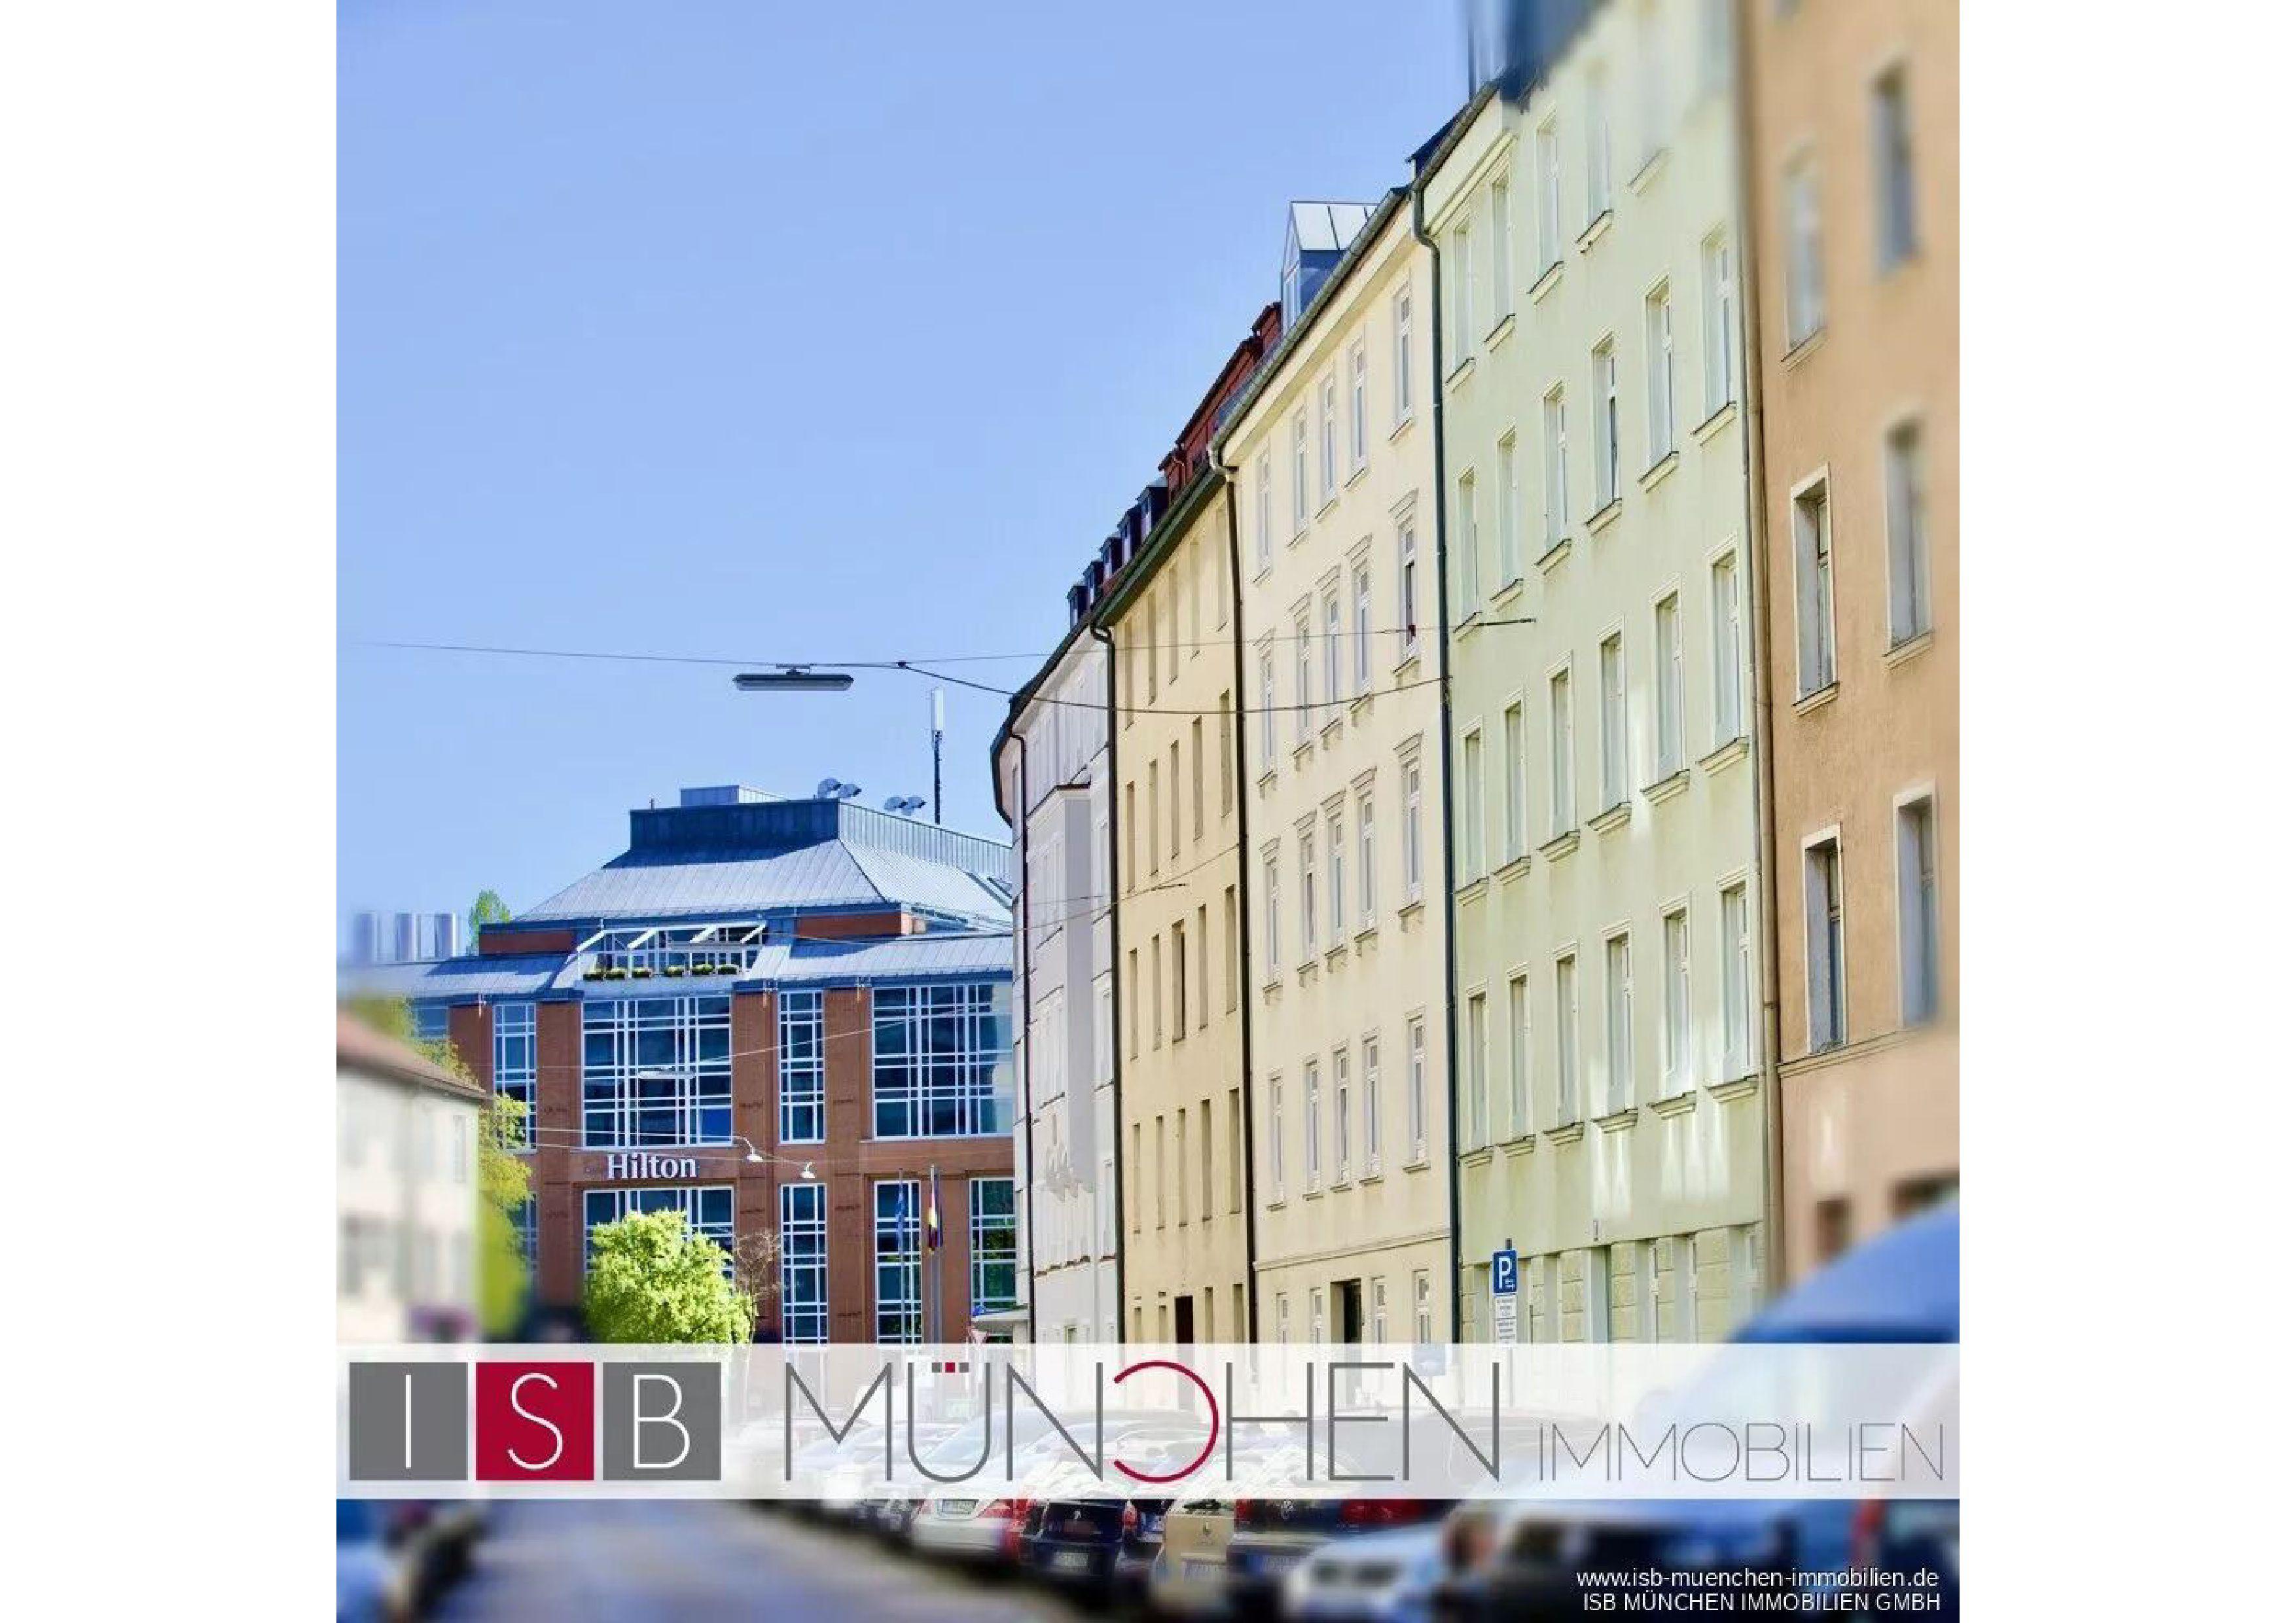 ISB München Immobilien GmbH, Baldurstraße 29 in München